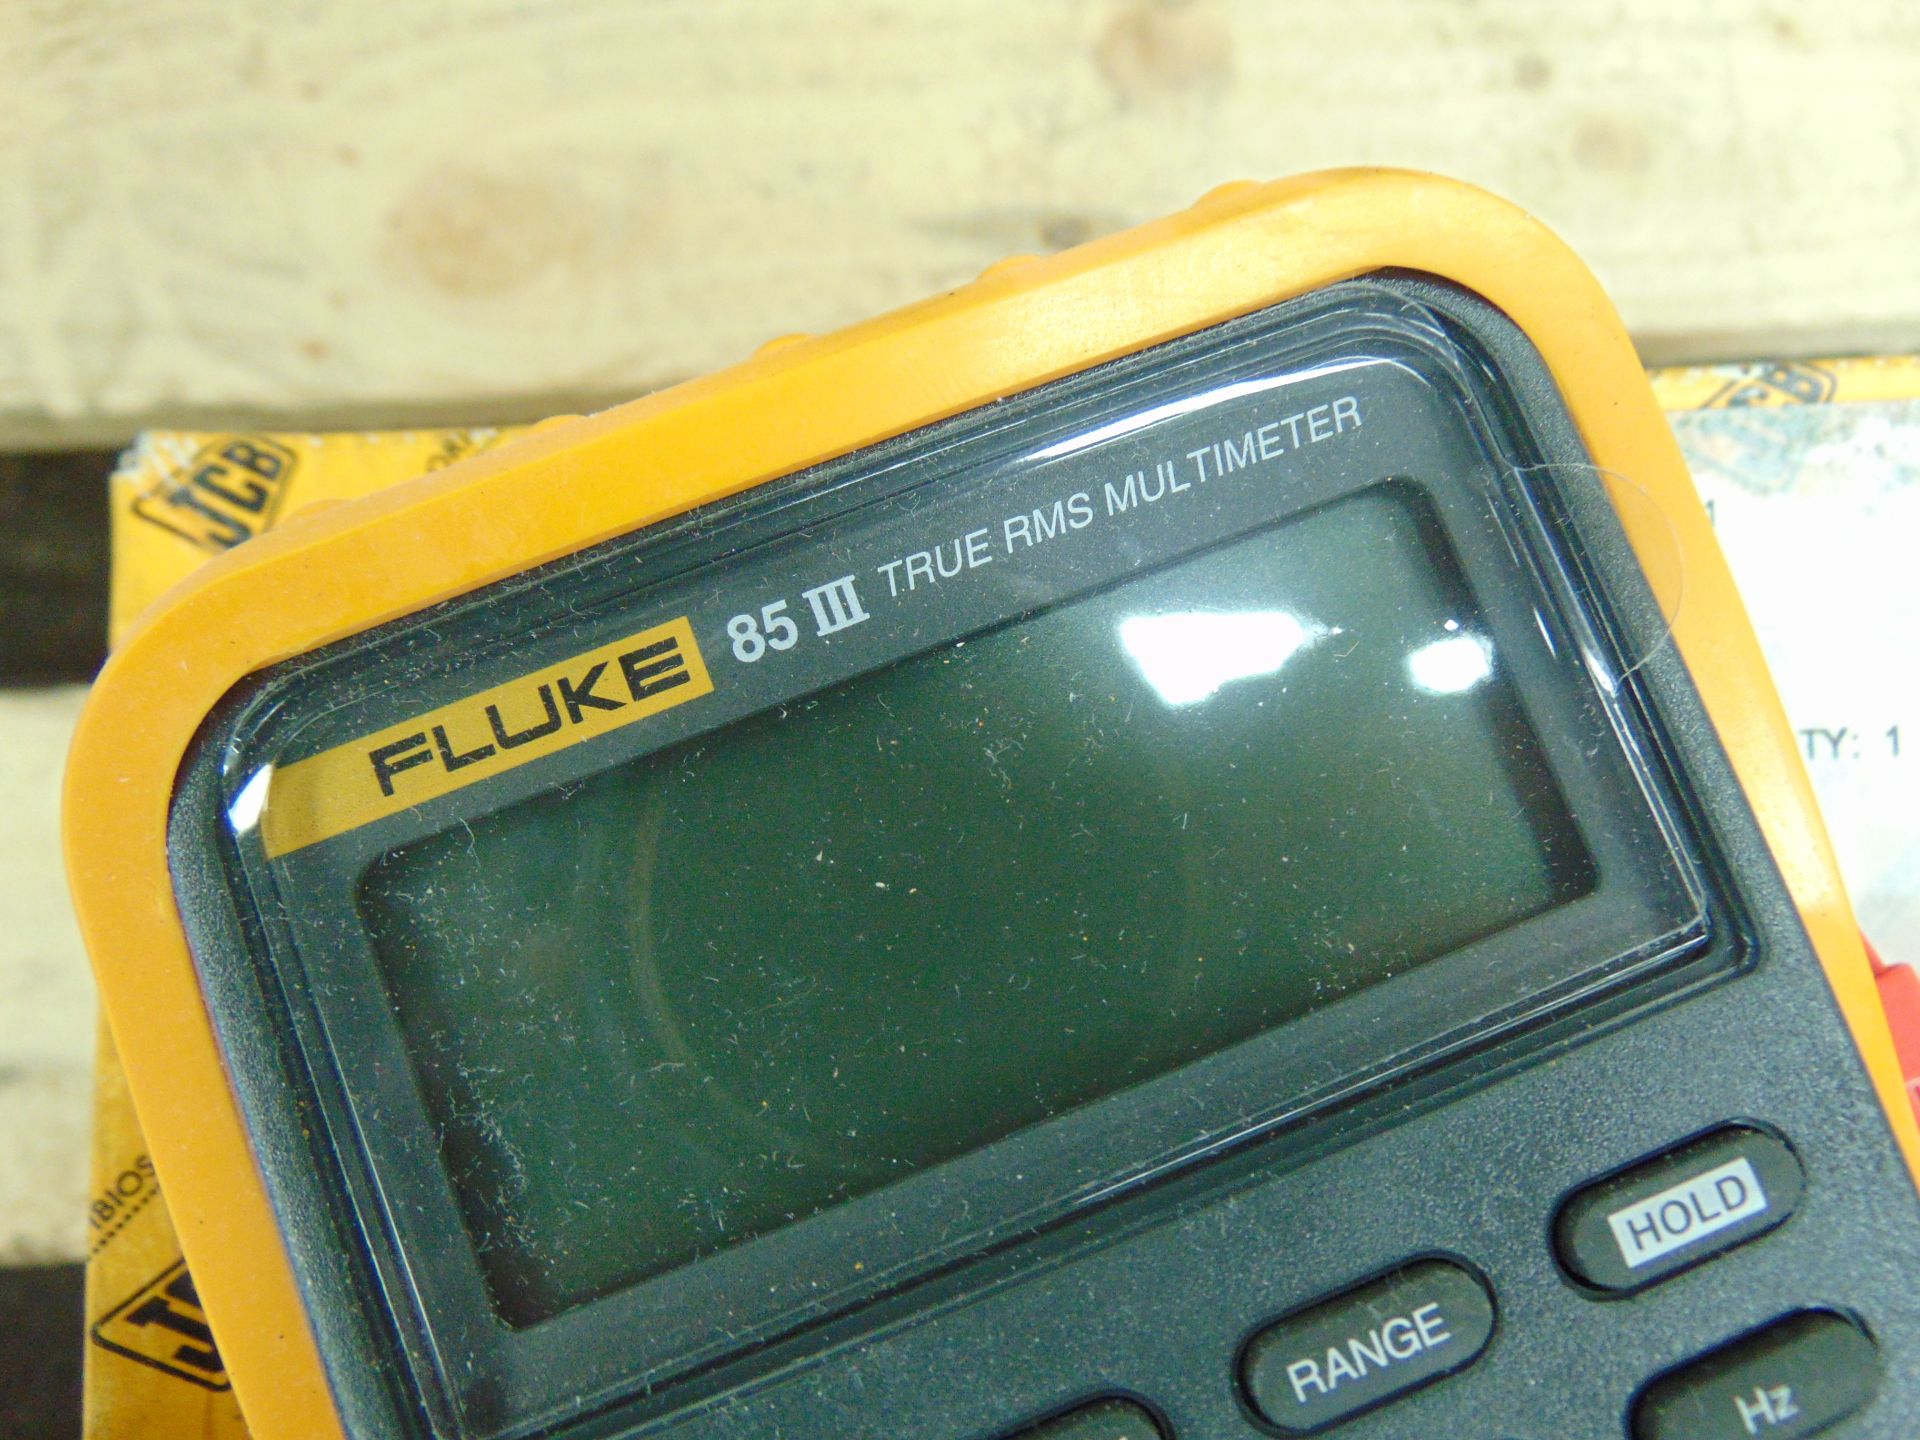 Fluke 85 III True RMS MultiMeter - Image 5 of 5